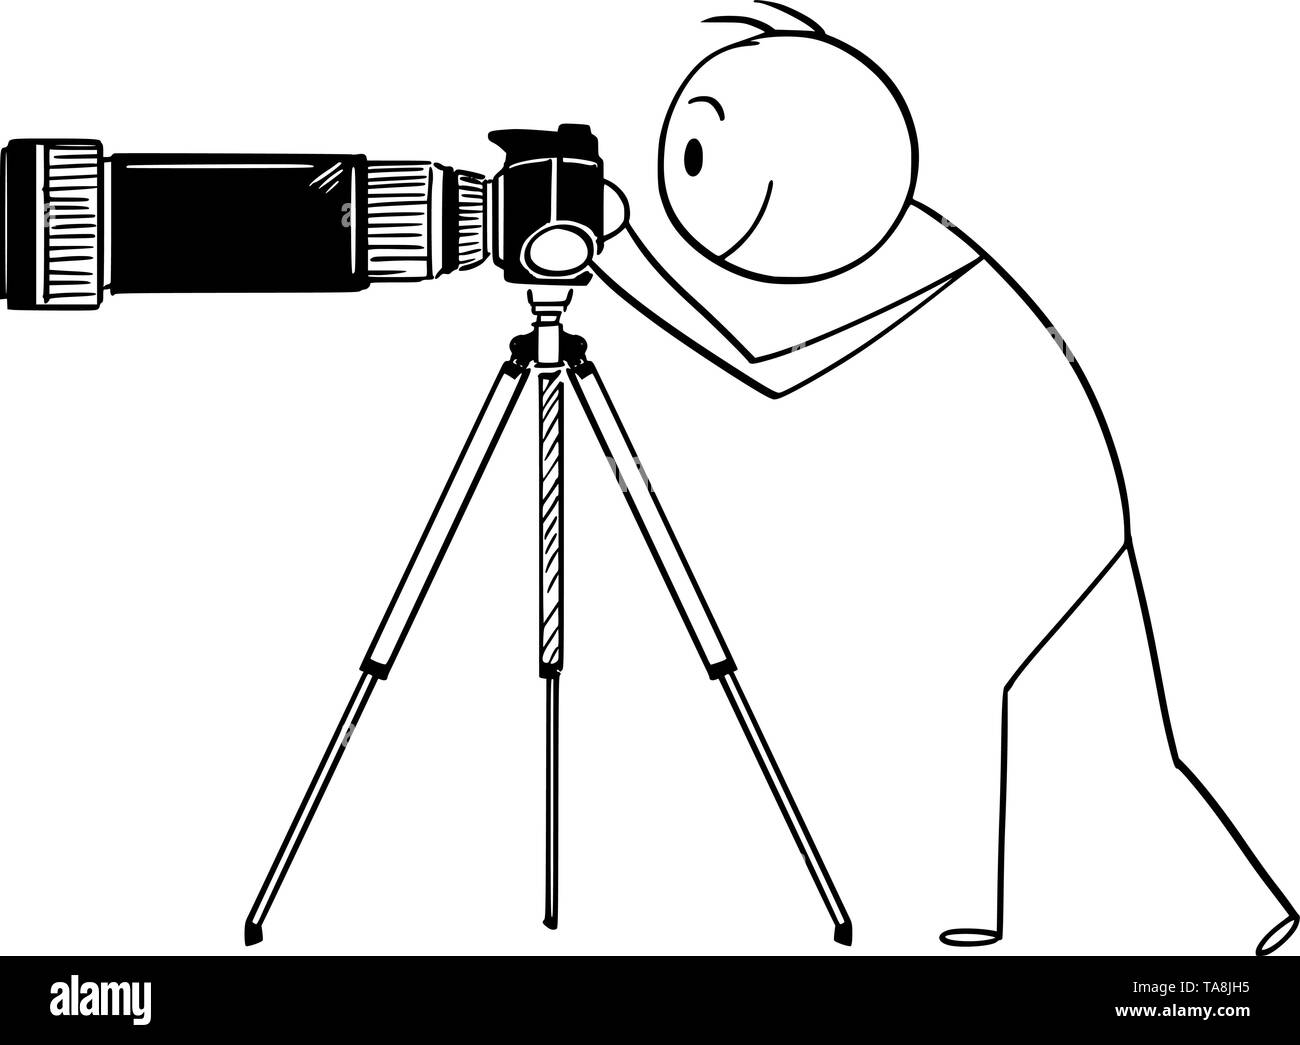 Vector cartoon stick figure dessin illustration conceptuelle de l'homme ou le photographe de prendre des photos avec appareil photo avec gros et long zoom ou téléobjectif monté sur trépied. Illustration de Vecteur